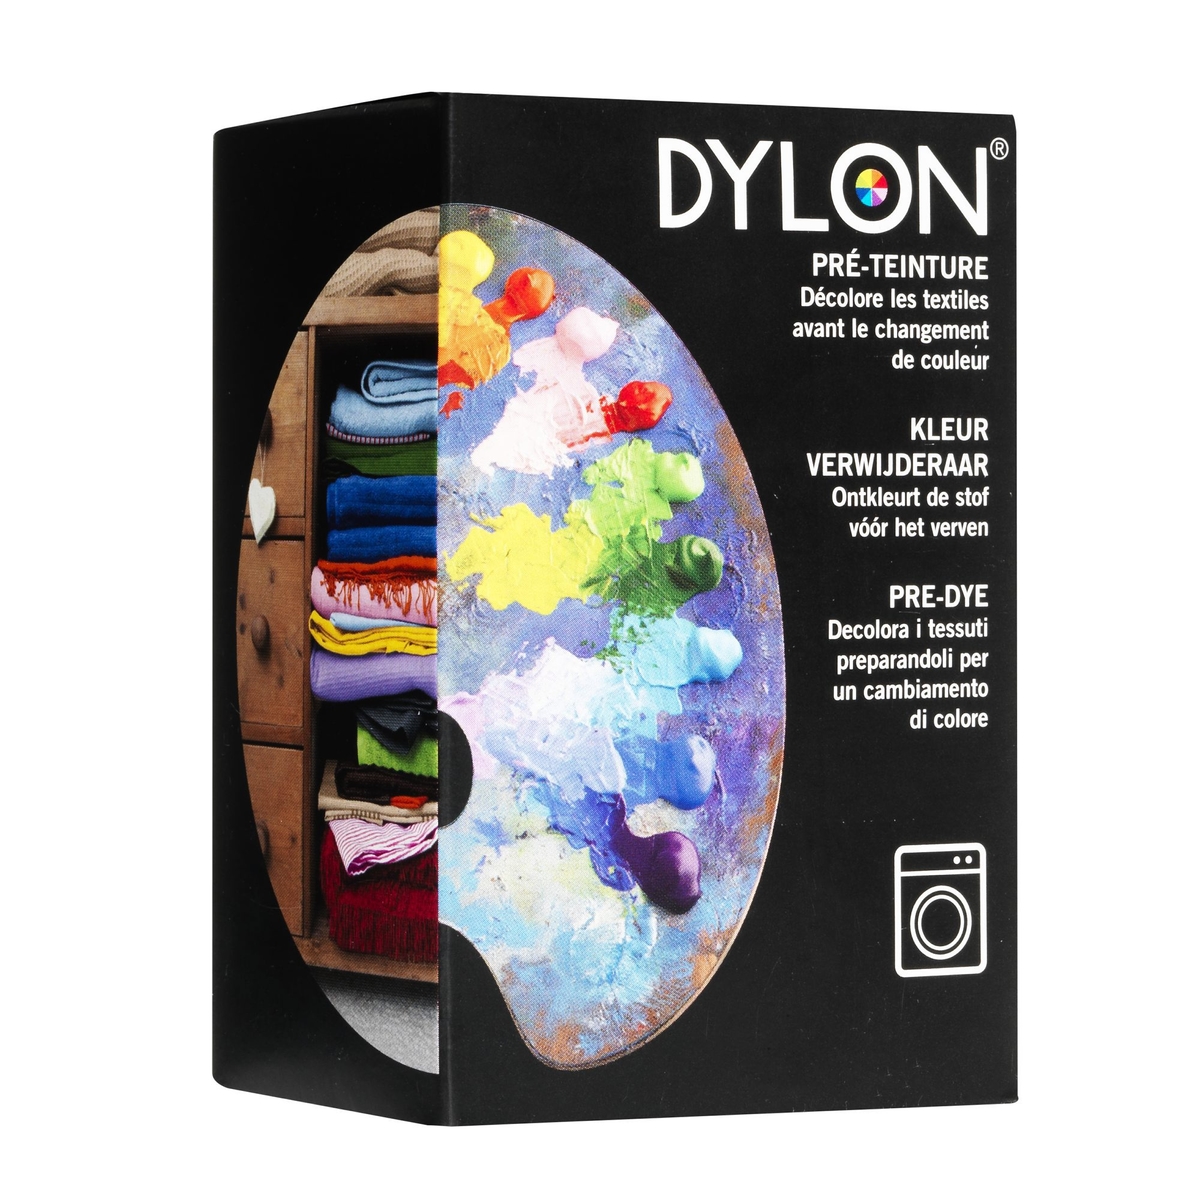 DYLON PRE-DYE 600 G